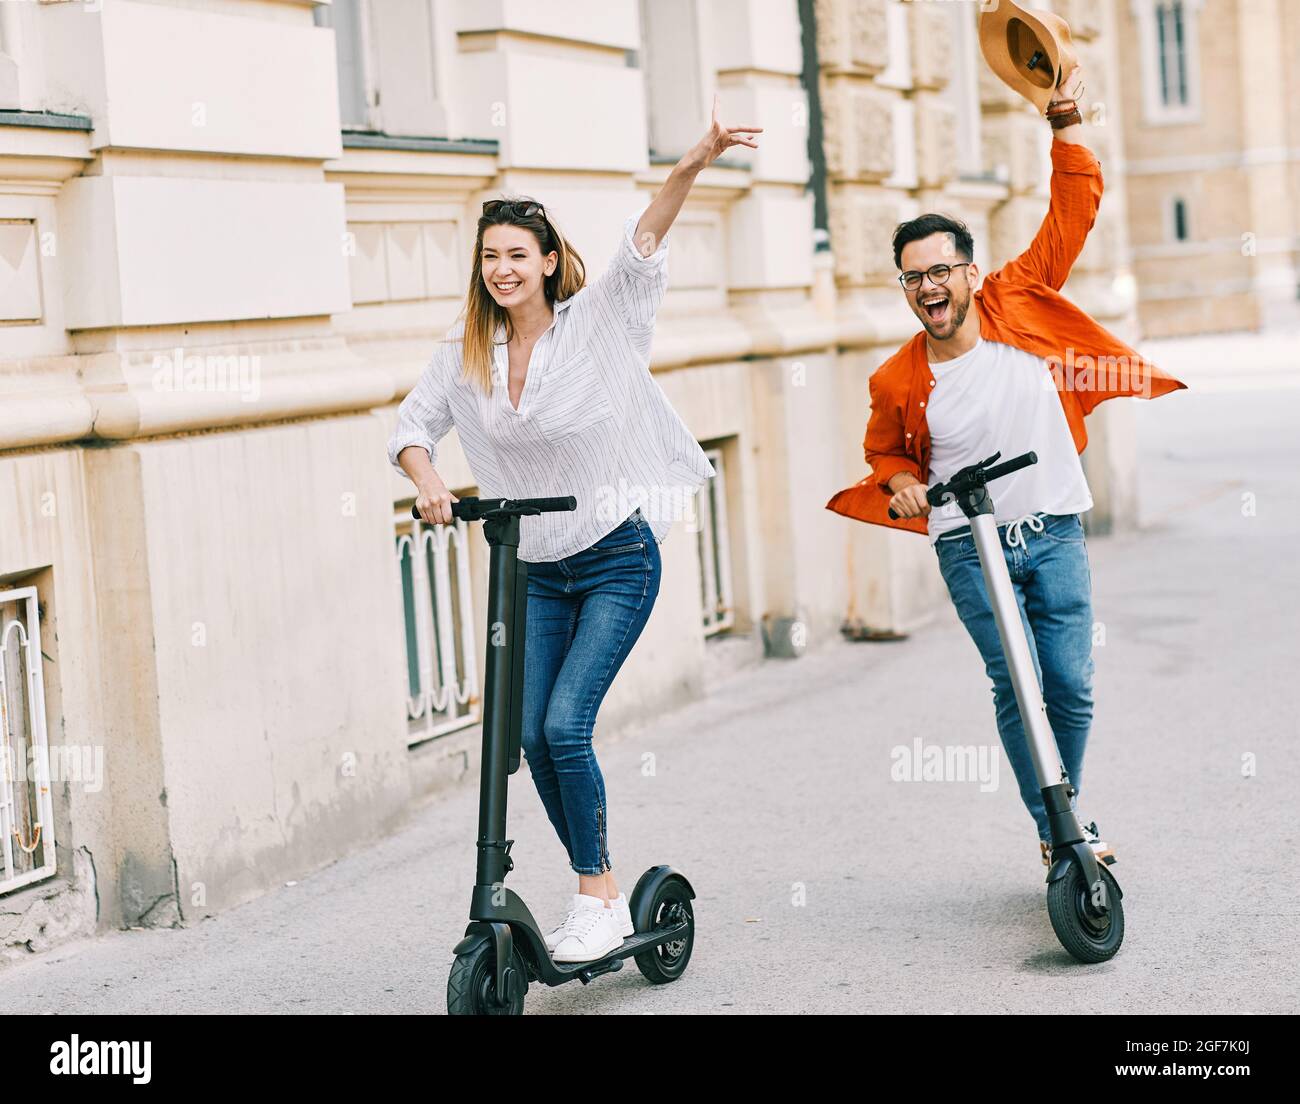 coppia giovane scooter elettrico città trasporto equitazione tecnologia lifestylestreet amico guida moderno Foto Stock